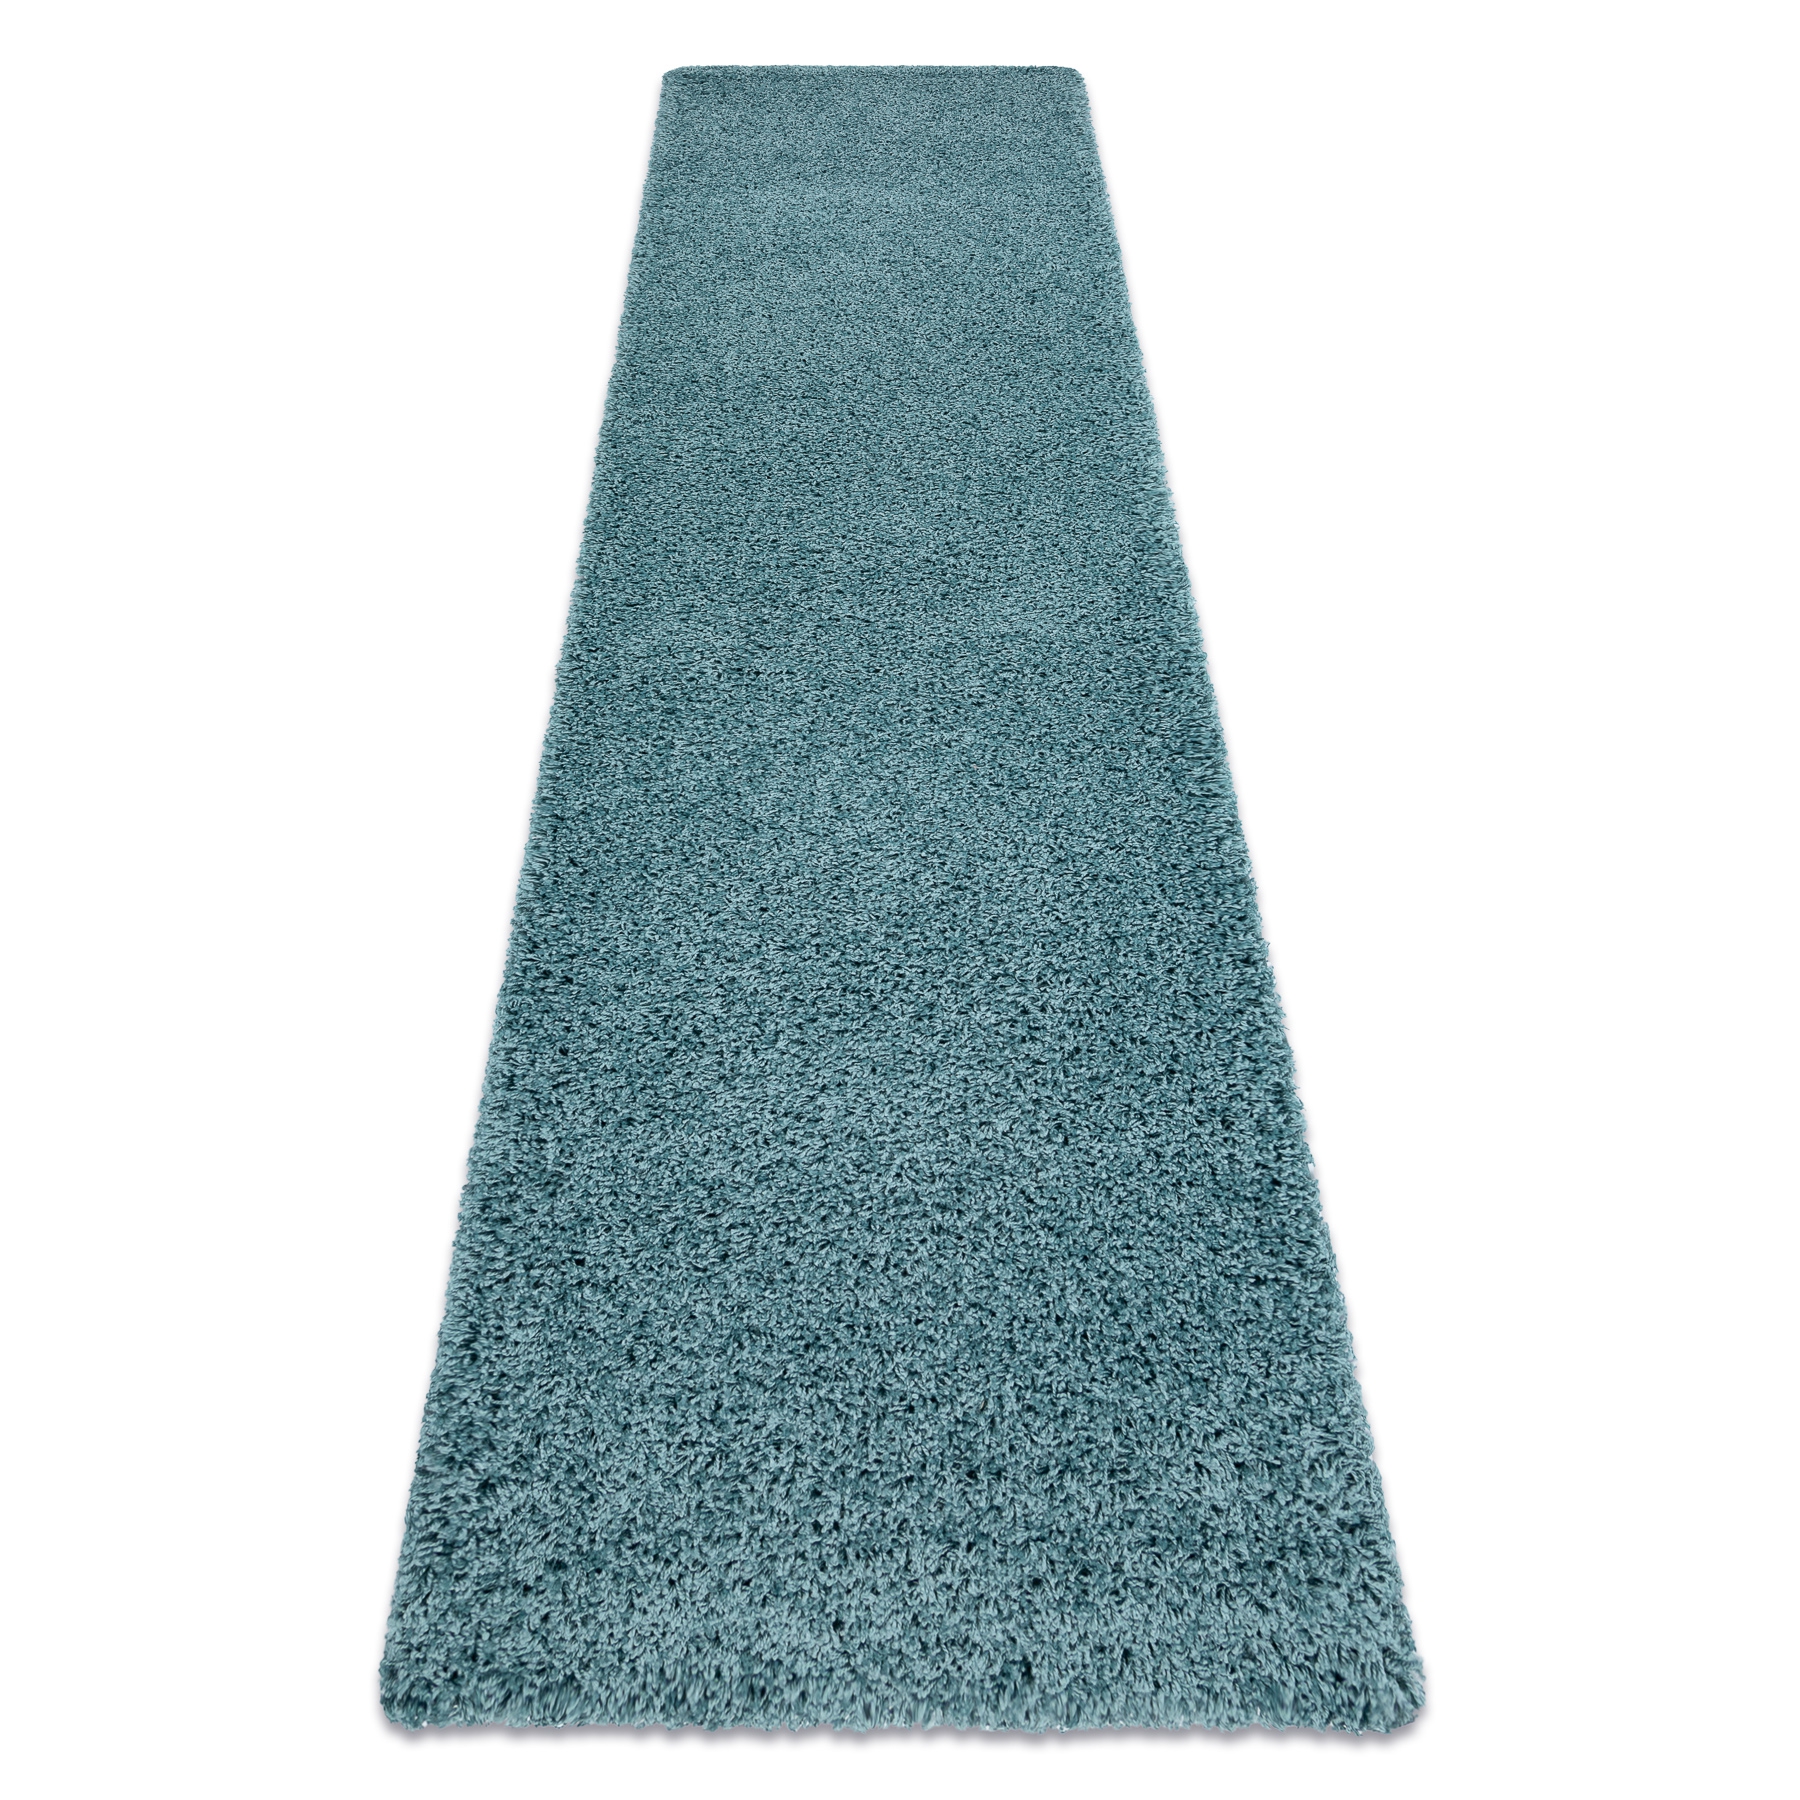 Tappeti, tappeti passatoie SOFFI shaggy 5cm blu - per il soggiorno, la  cucina, il corridoio - Tappeti